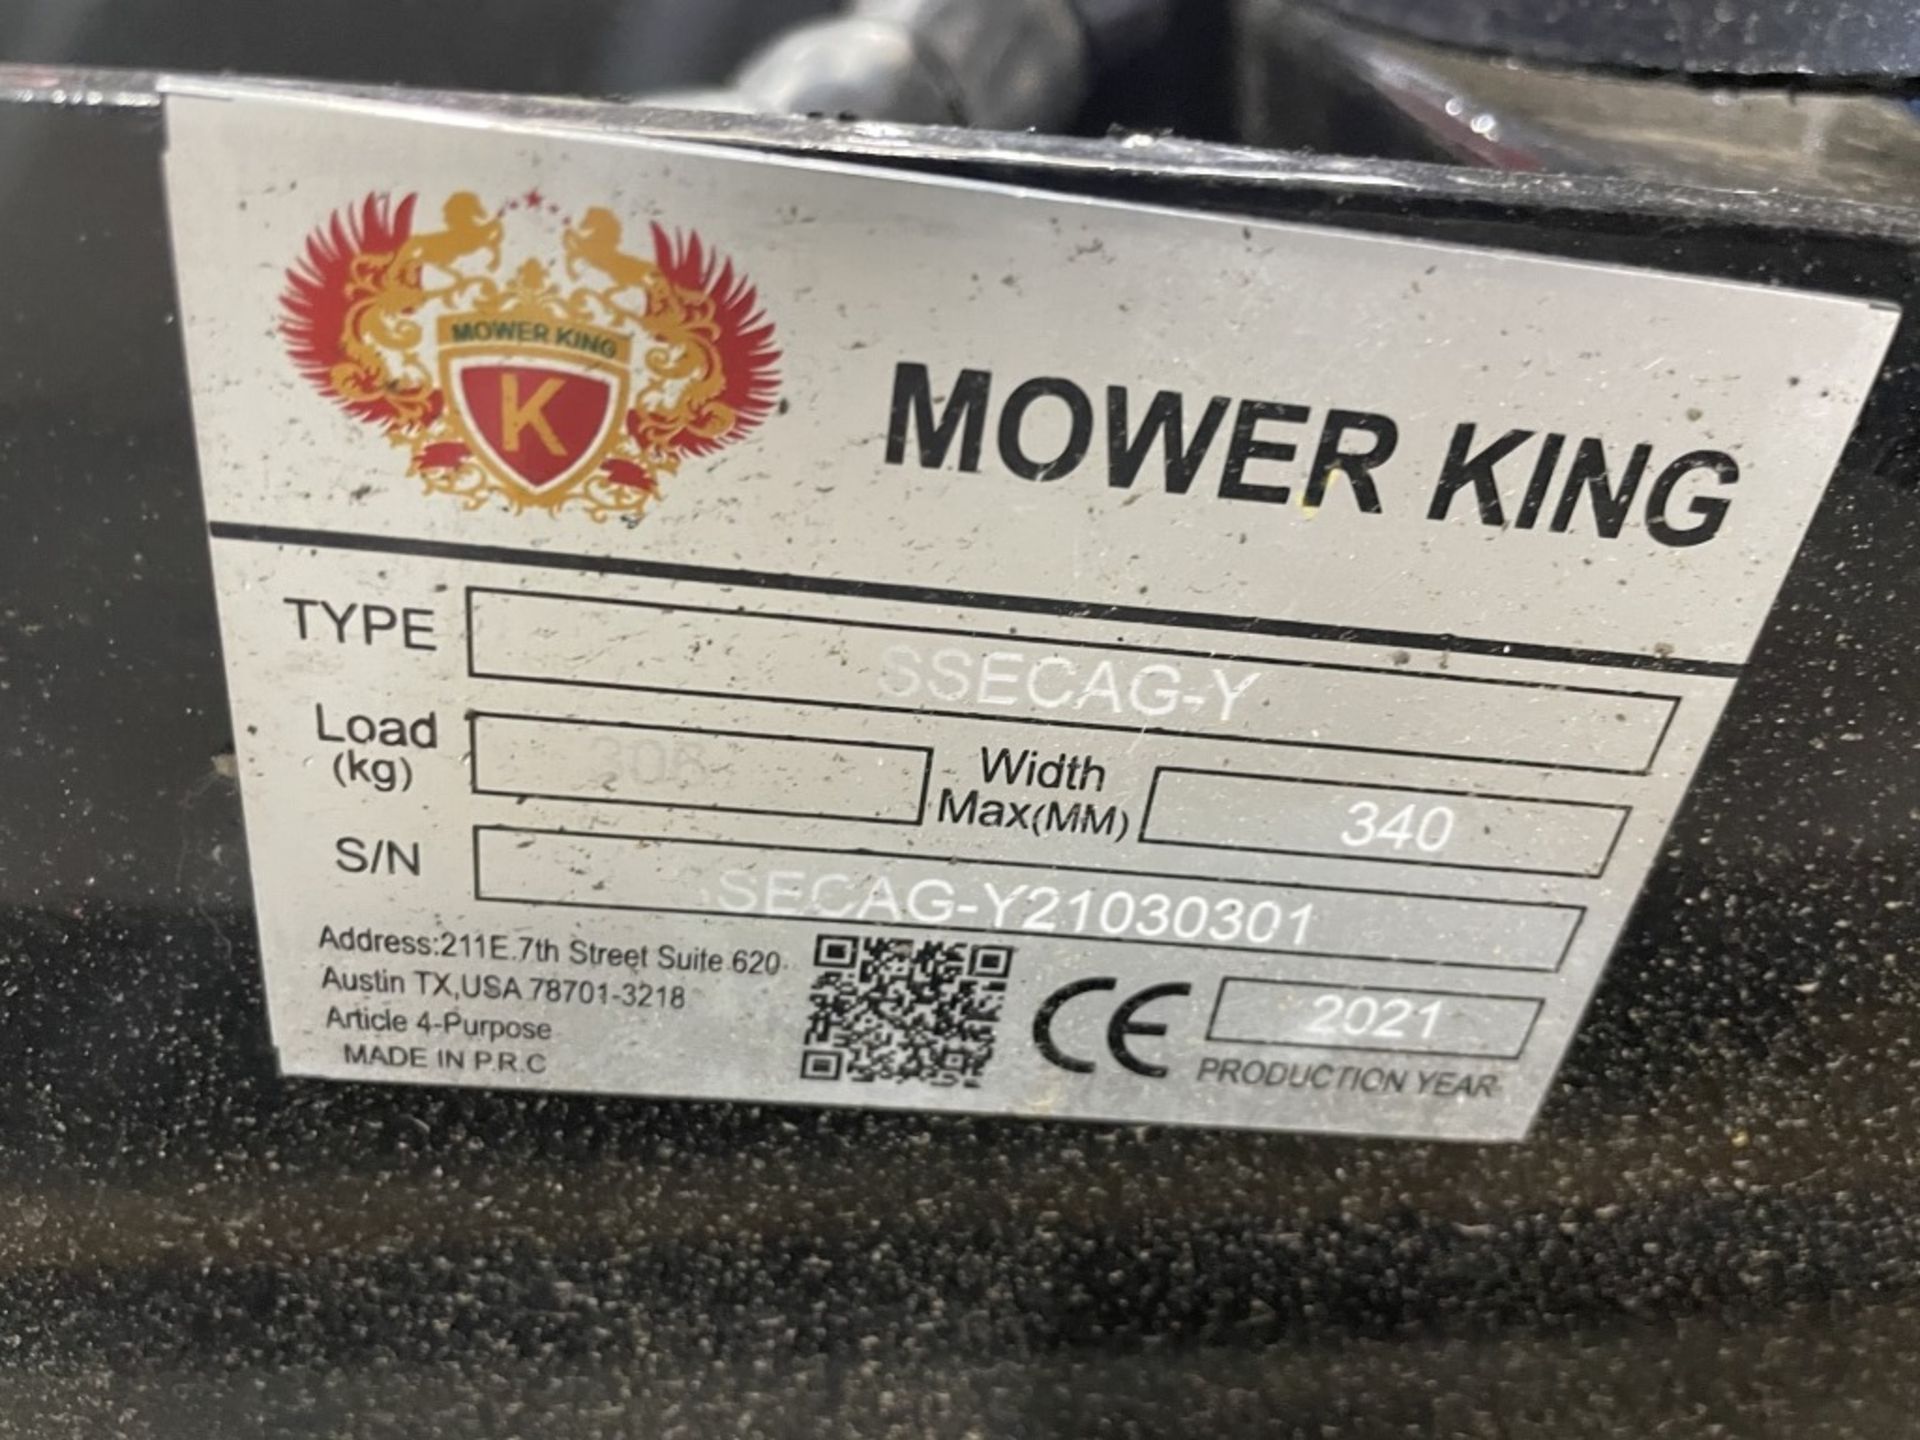 2021 Mower King SSECAG-Y Auger - Image 4 of 4